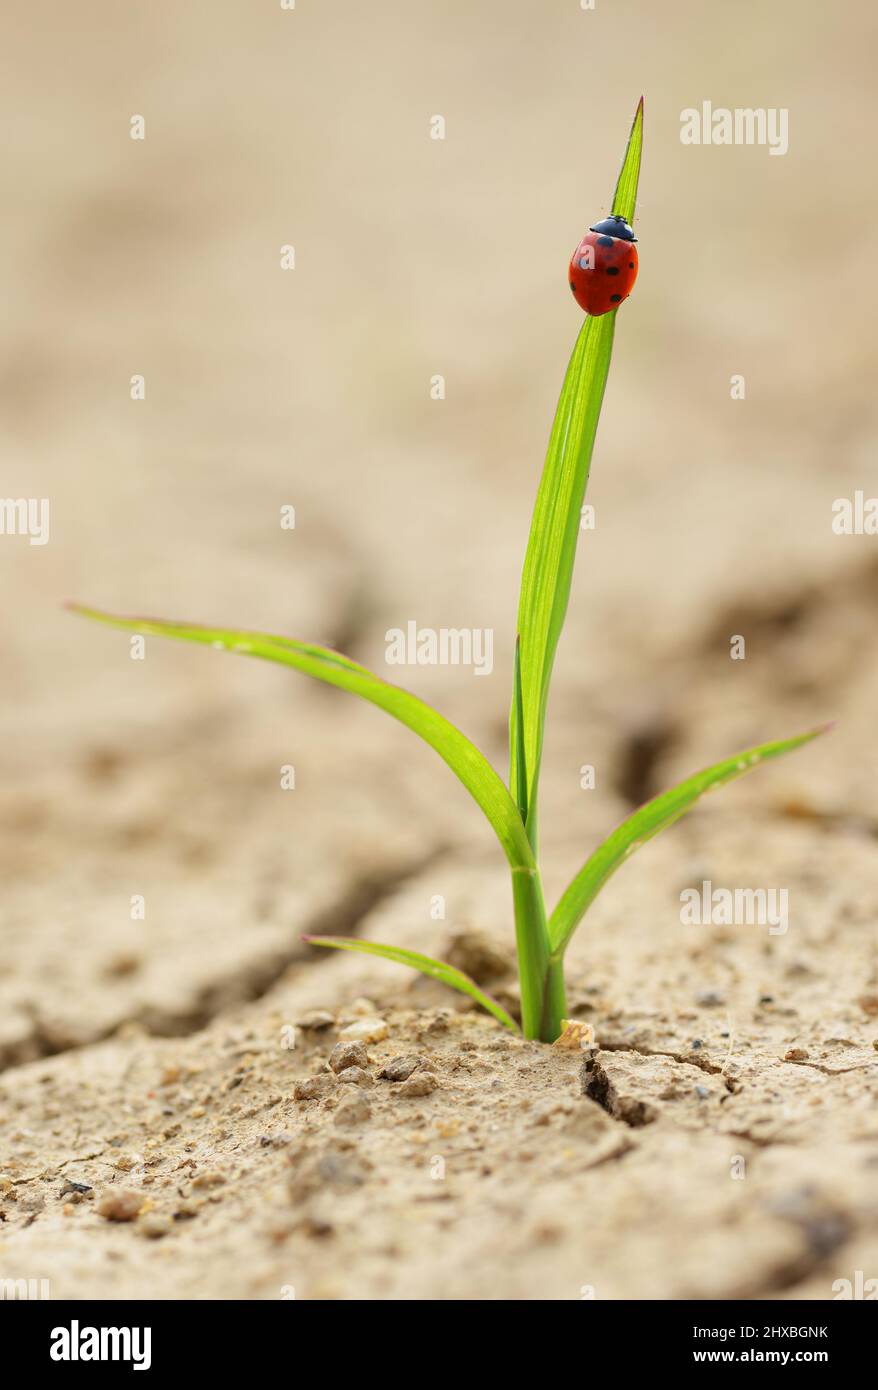 Ladybug en planta smal que crece de suelo seco agrietado. Nuevo concepto de vida. Foto de stock